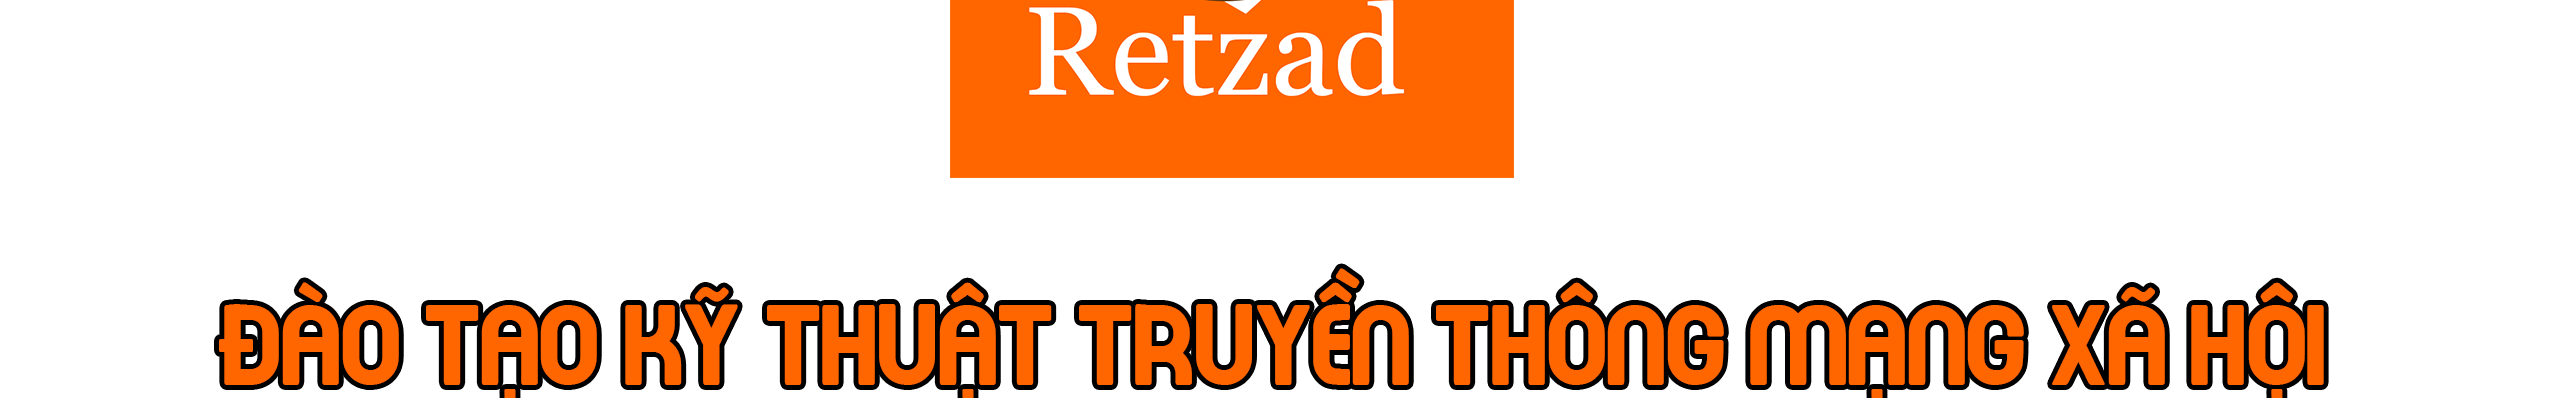 Trường Dạy Truyền Thông Kỹ Thuật Số Retzad's profile banner